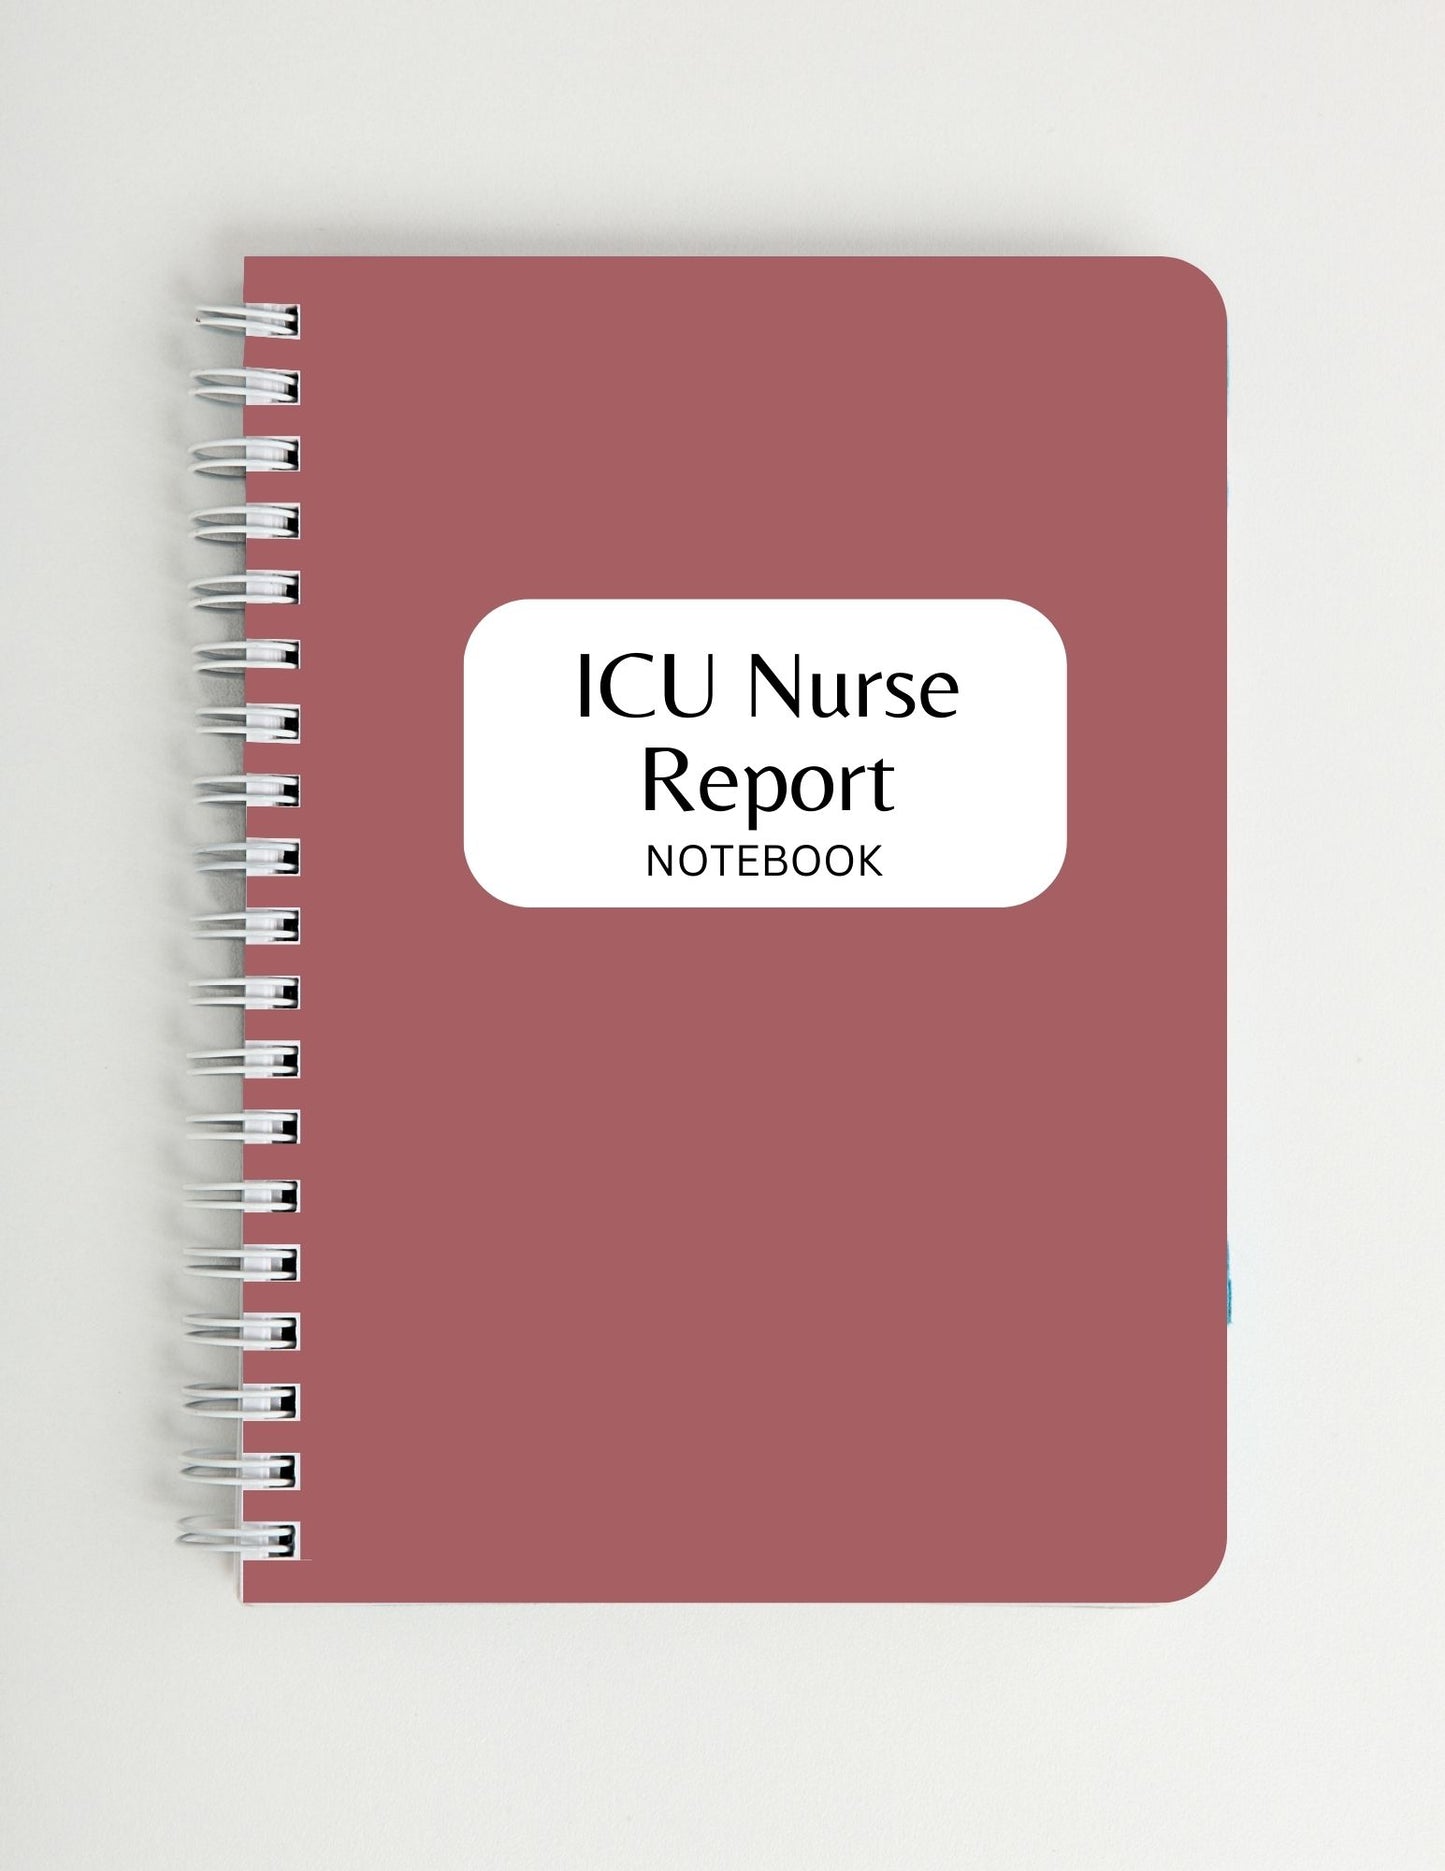 Intensive Care Unit (ICU) Nurse Report Notebook